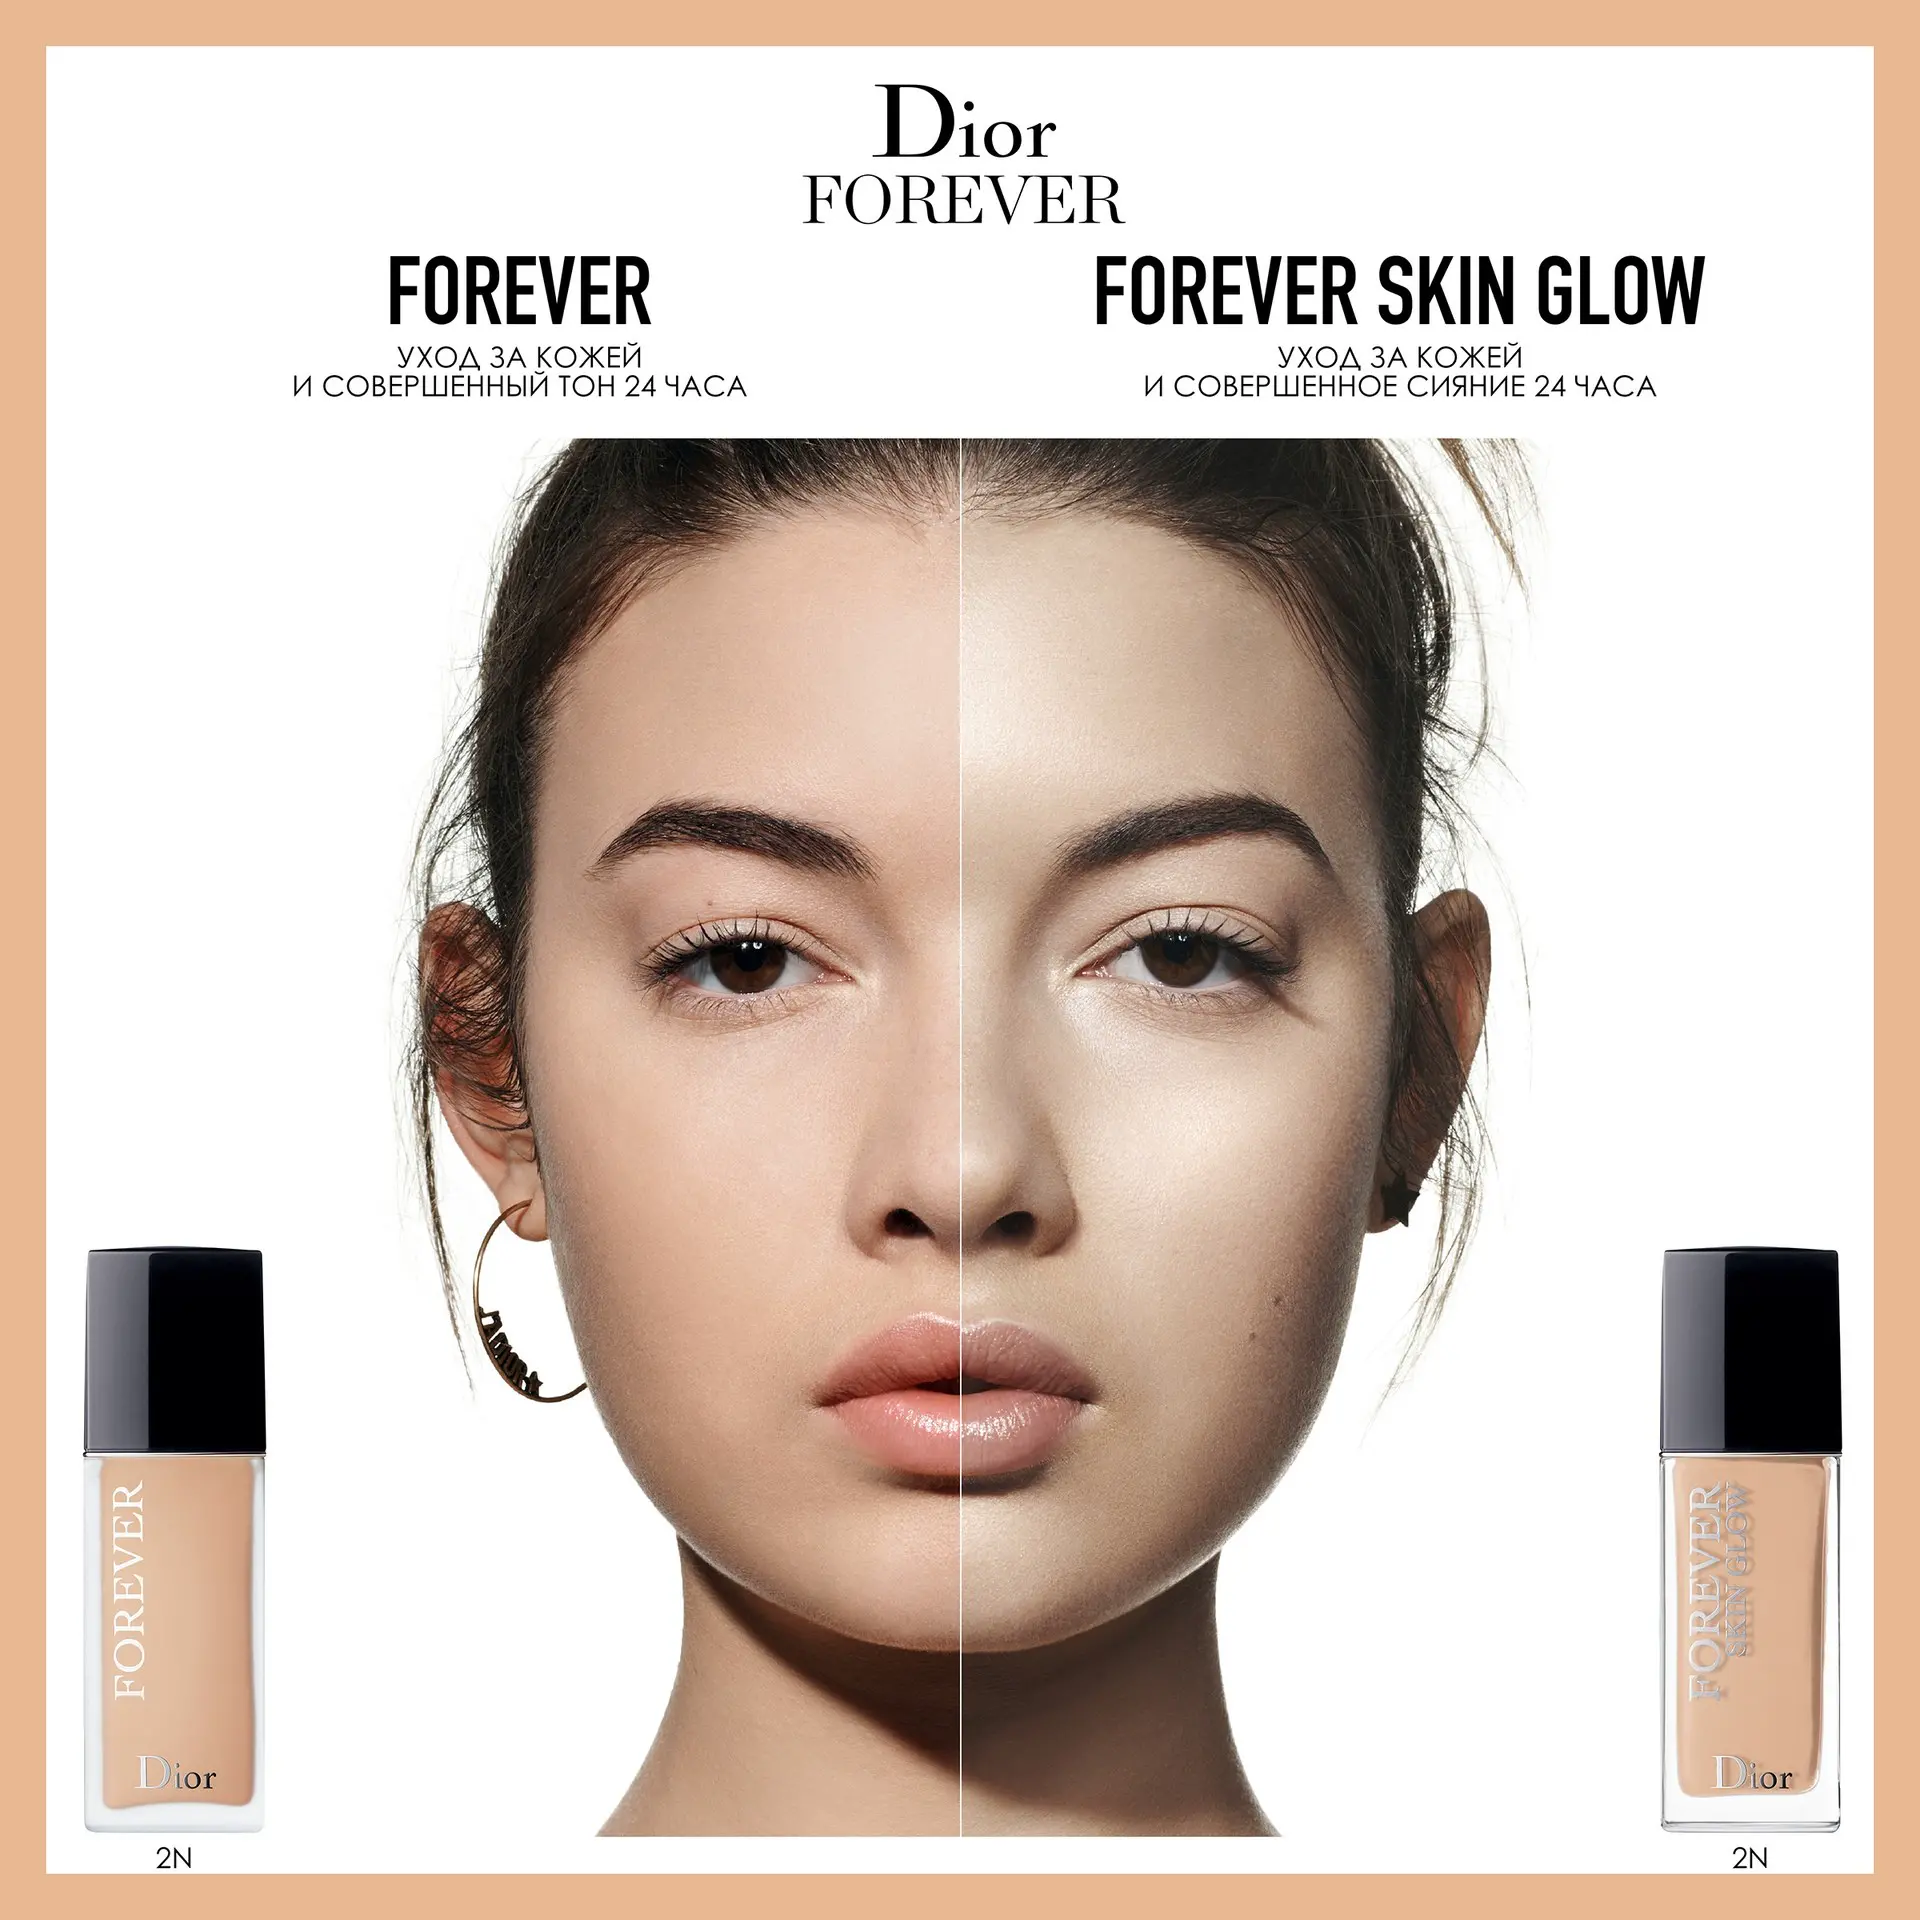 dior forever skin glow 3n